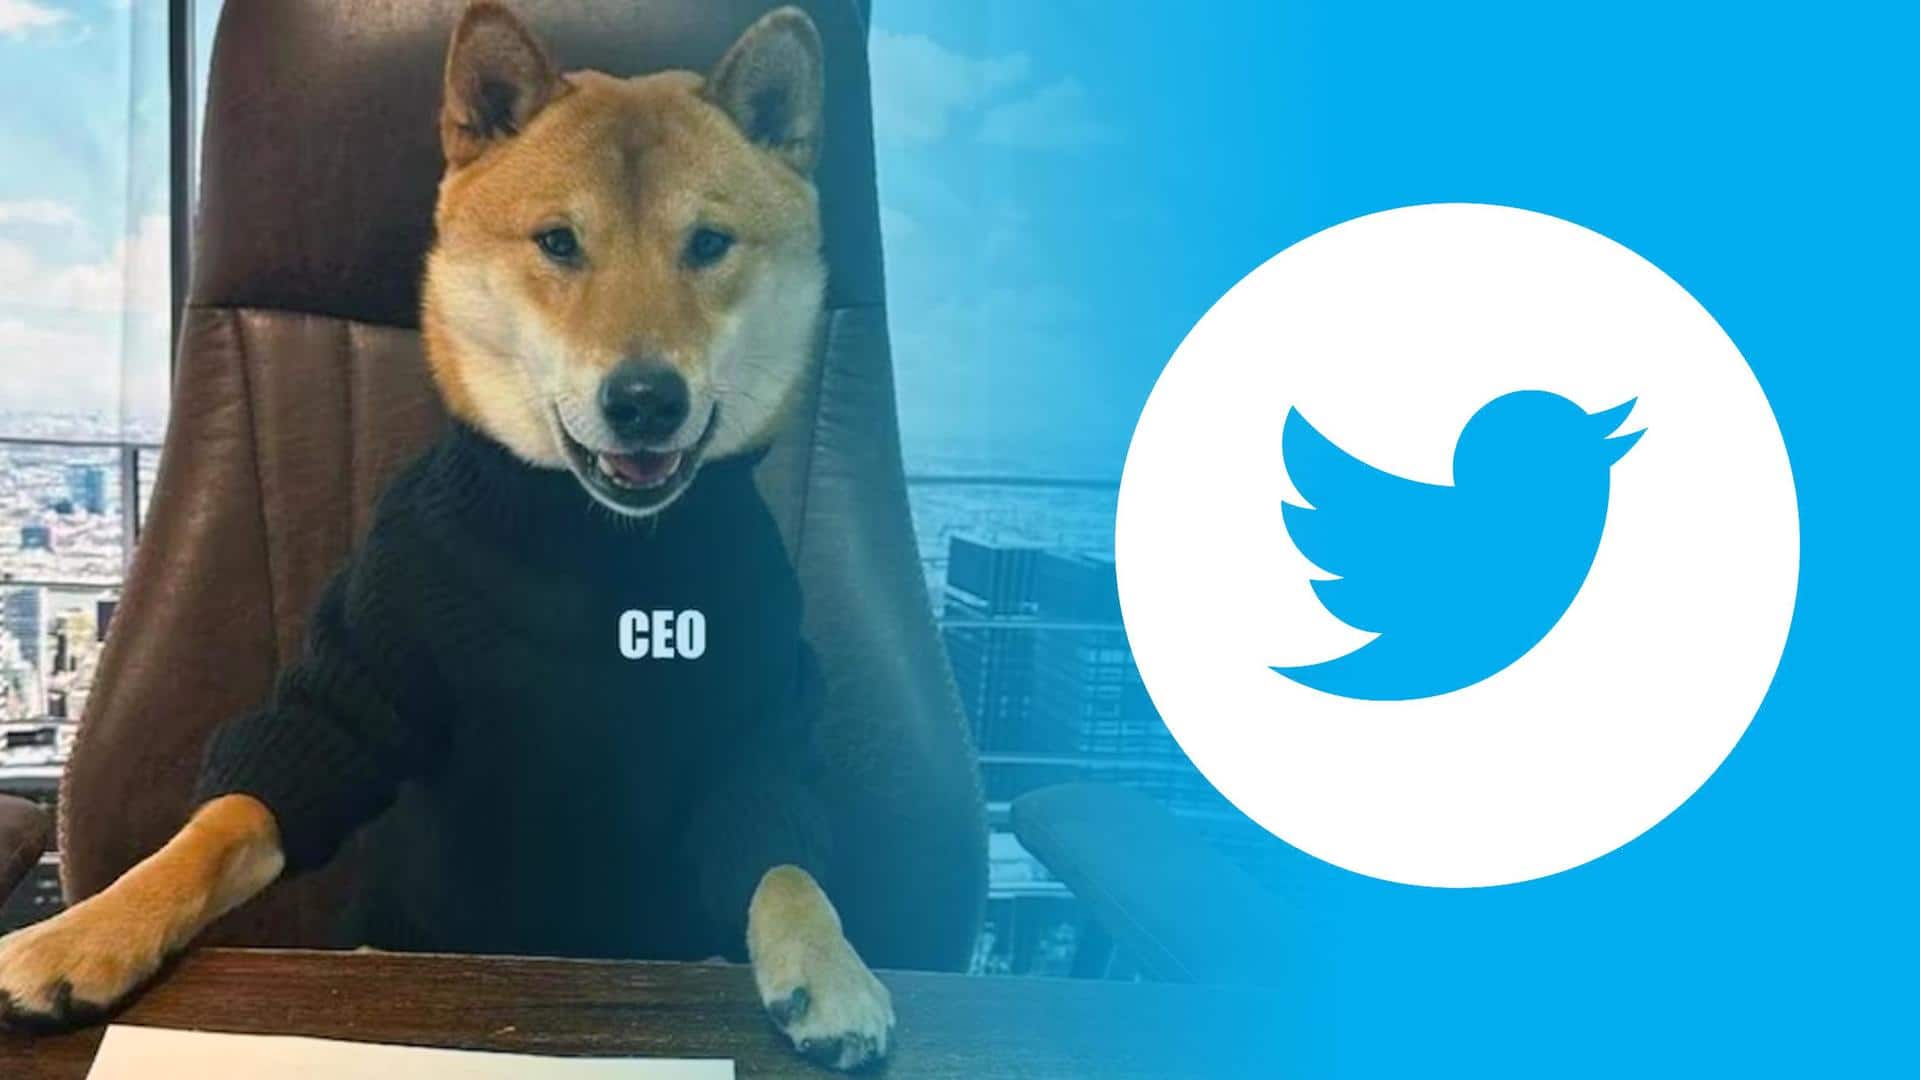 Woof! Meet Floki, Elon Musk's dog and Twitter's new CEO